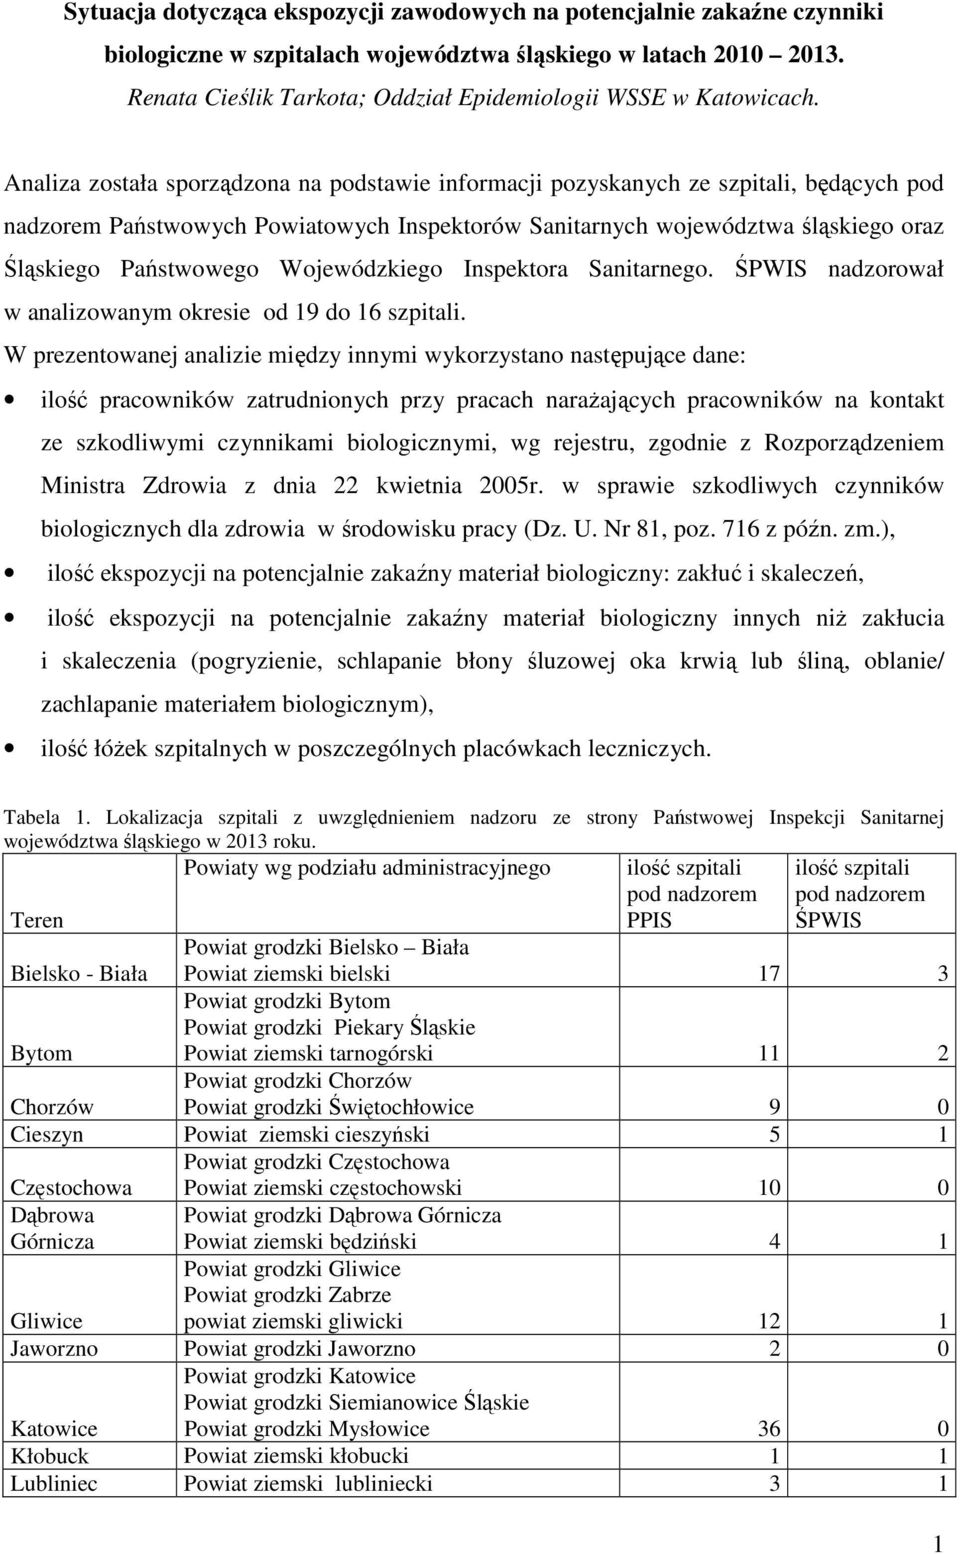 Analiza została sporządzona na podstawie informacji pozyskanych ze szpitali, będących pod nadzorem Państwowych Powiatowych Inspektorów Sanitarnych województwa śląskiego oraz Śląskiego Państwowego